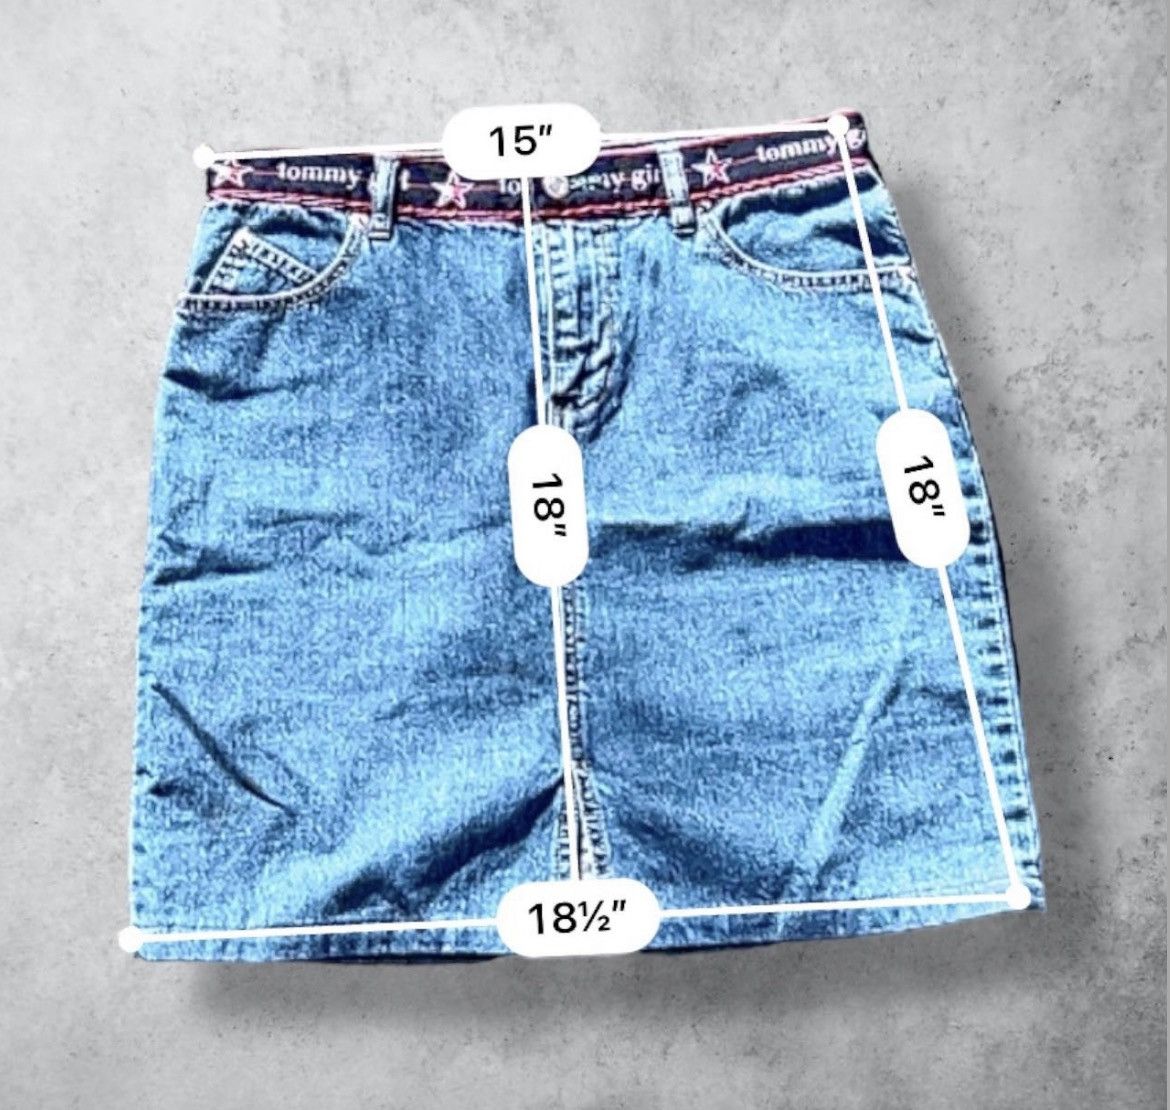 Vintage Vintage Tommy Hilfiger Tommy Girl Mini Denim Jean Skirt Size 30" / US 8 / IT 44 - 4 Preview